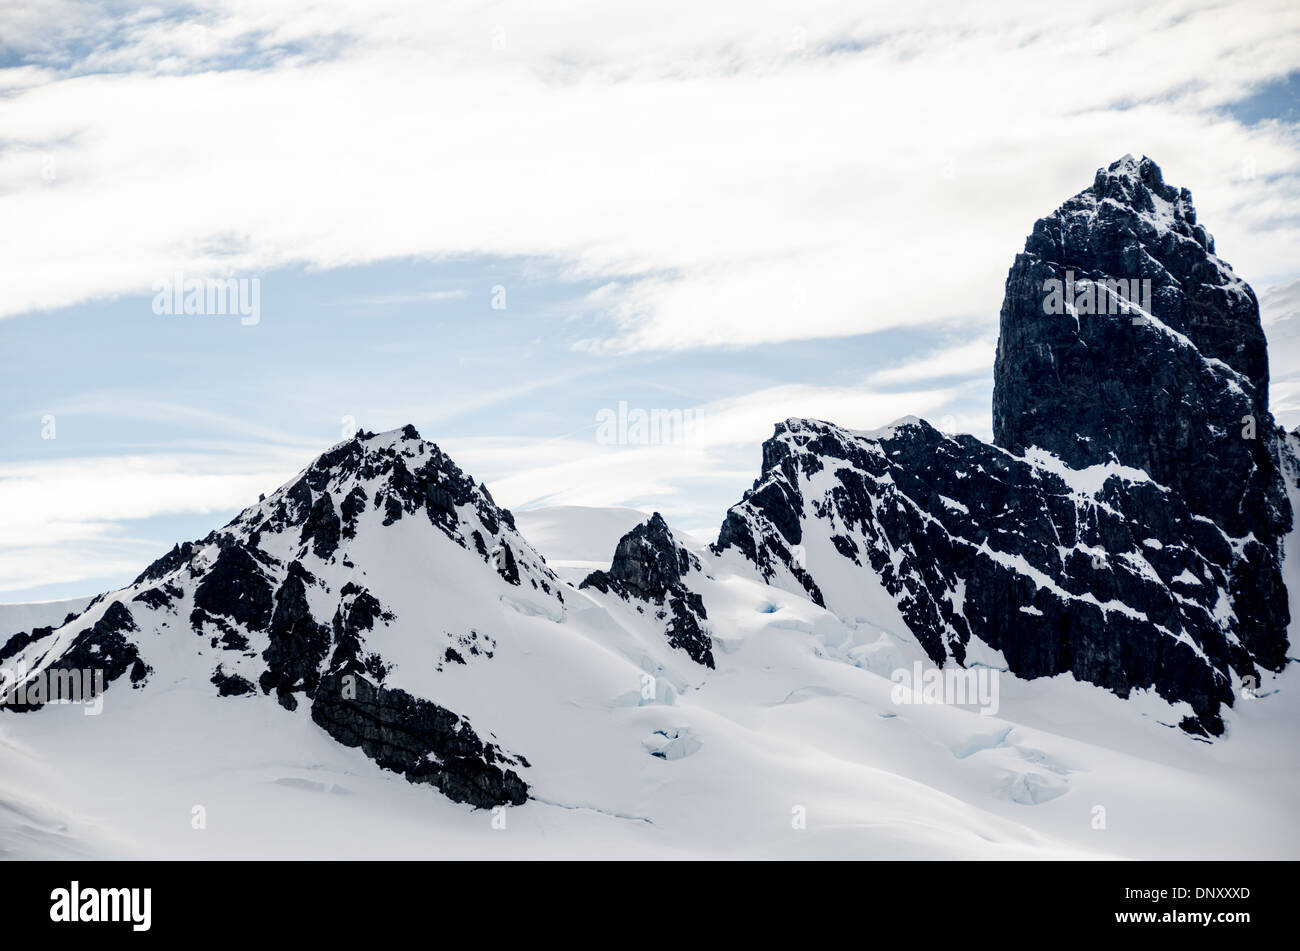 Antarktis - Robuste Rocky Mountains bei Schnee und Eis ragen aus der Antarktis Halbinsel nahe Cuverville Insel bedeckt. Stockfoto